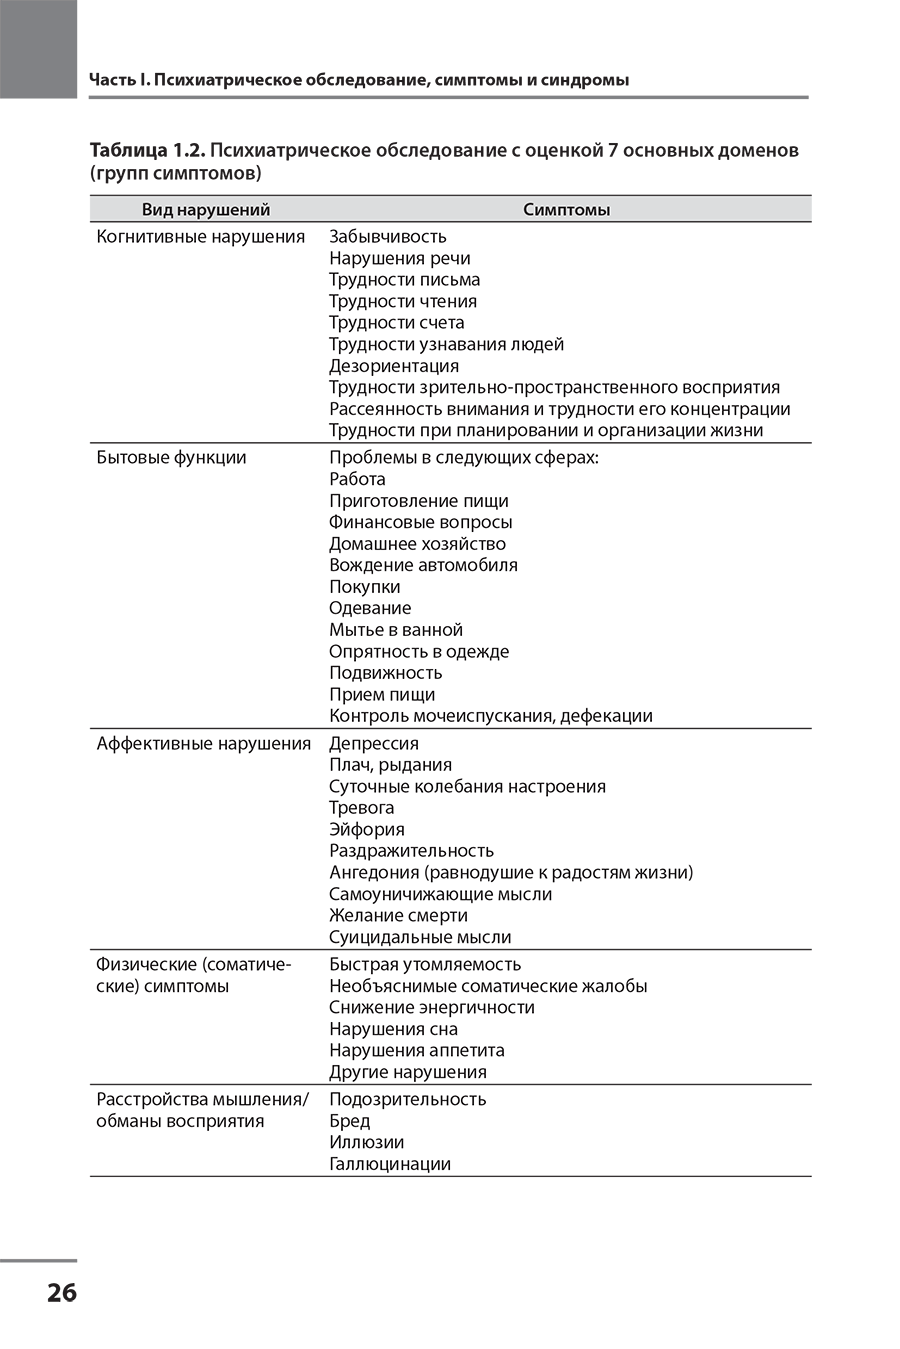 Таблица 1.2. Психиатрическое обследование с оценкой 7 основных доменов (групп симптомов)